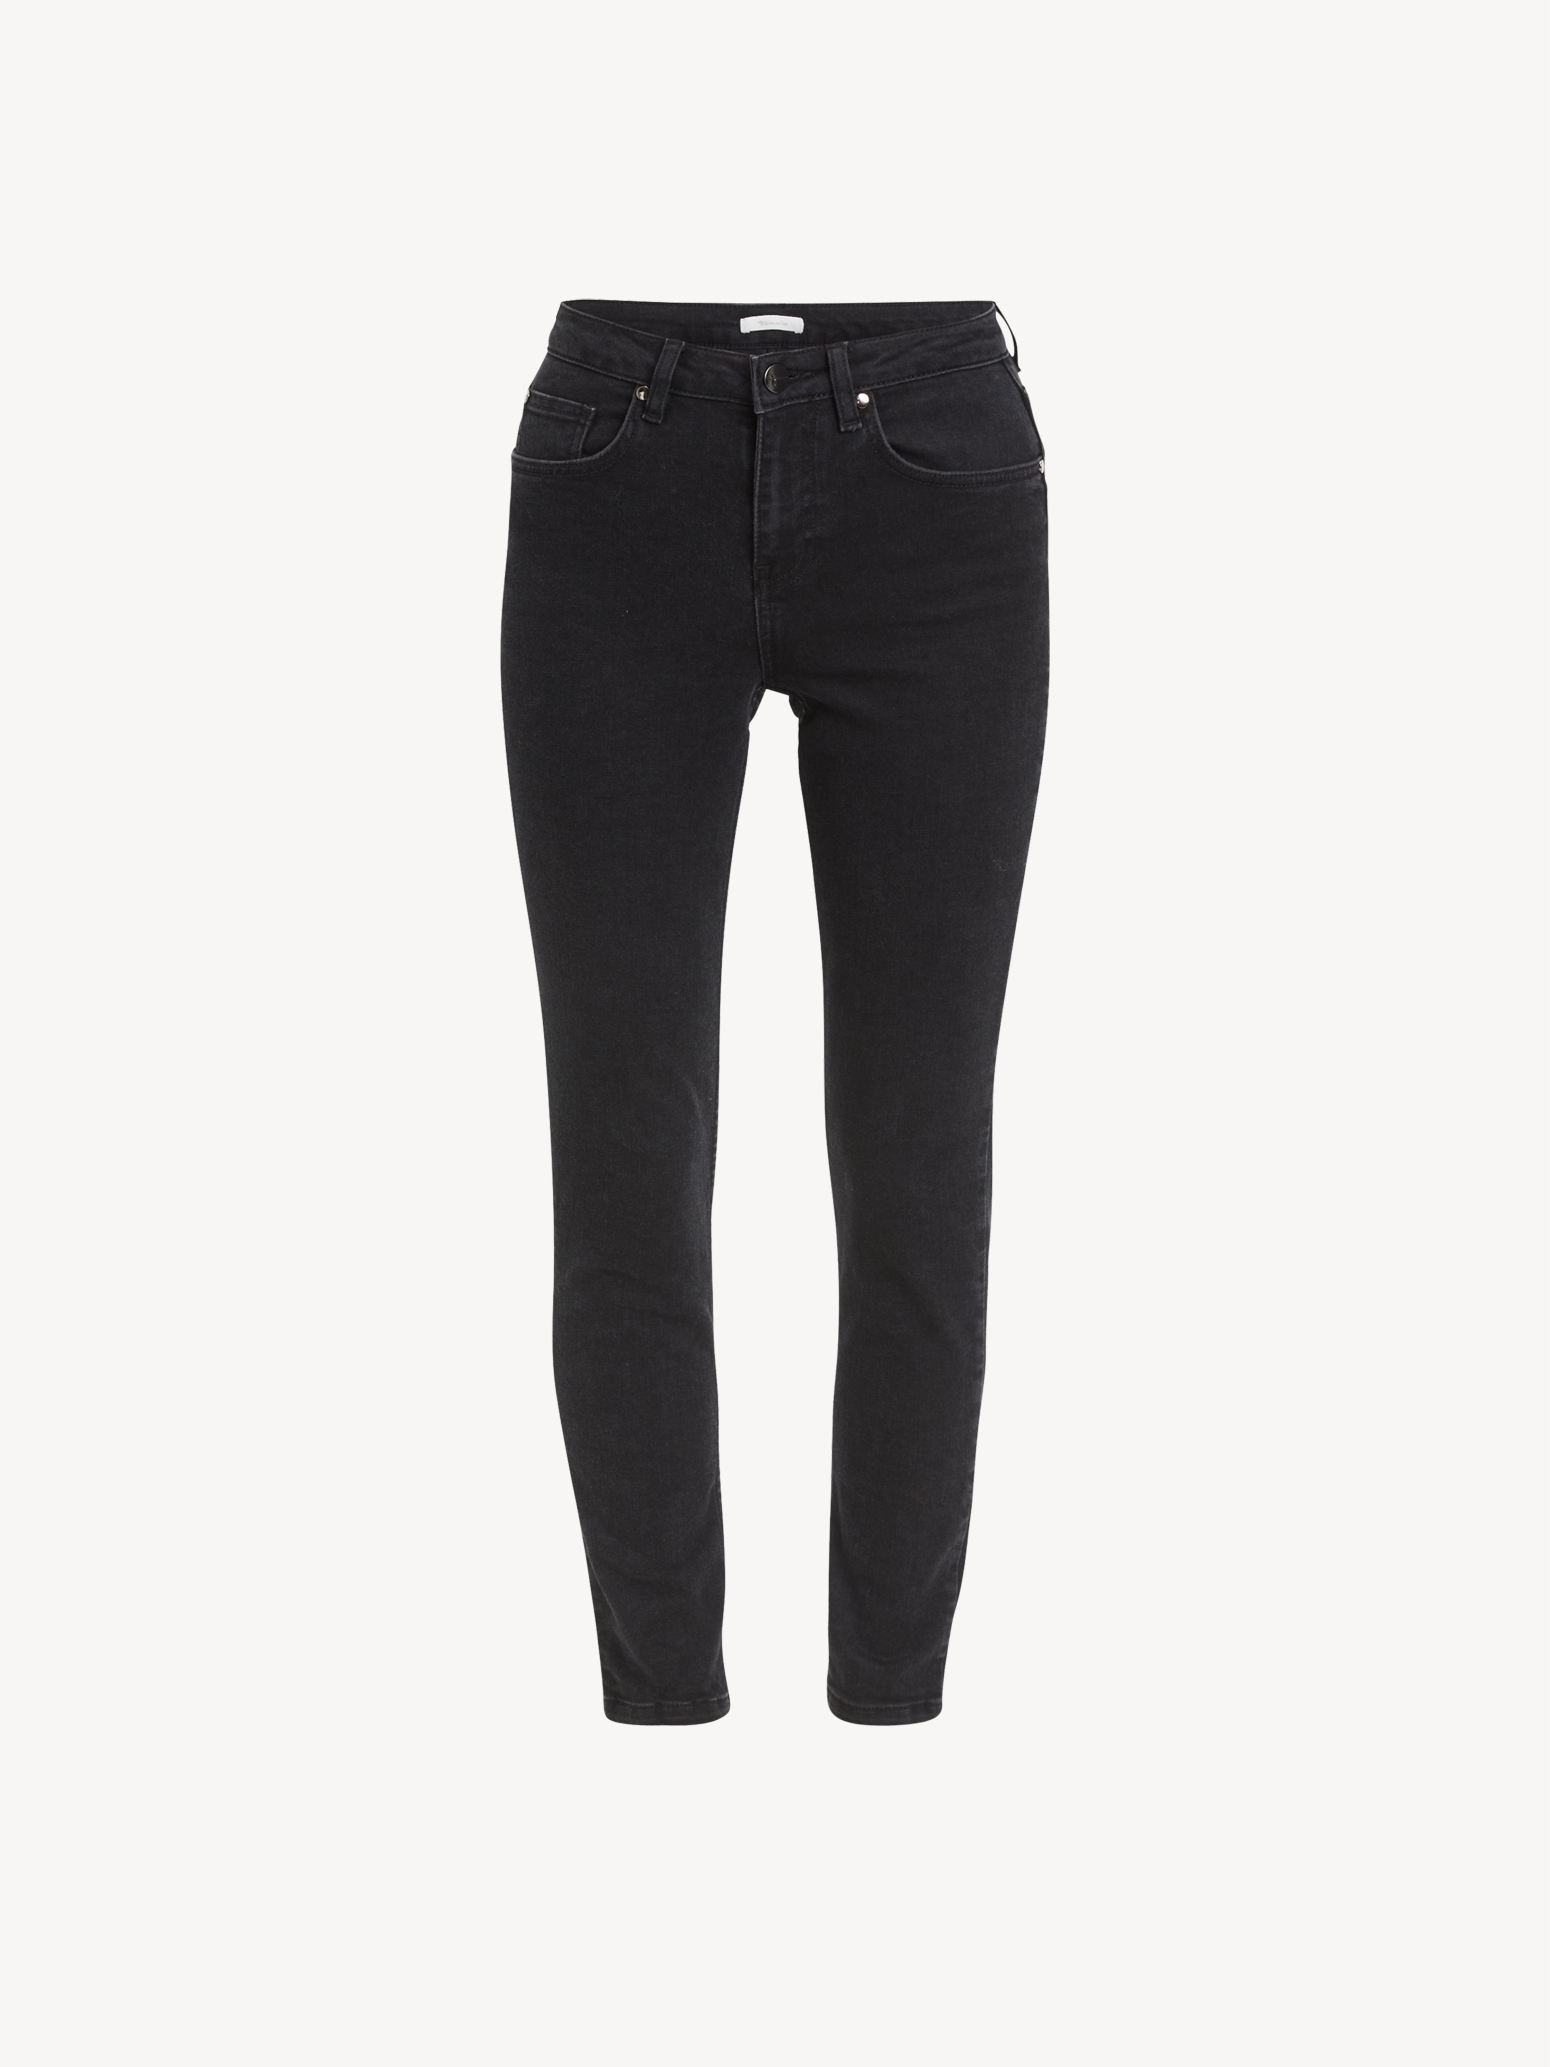 jeans noir - 44/32